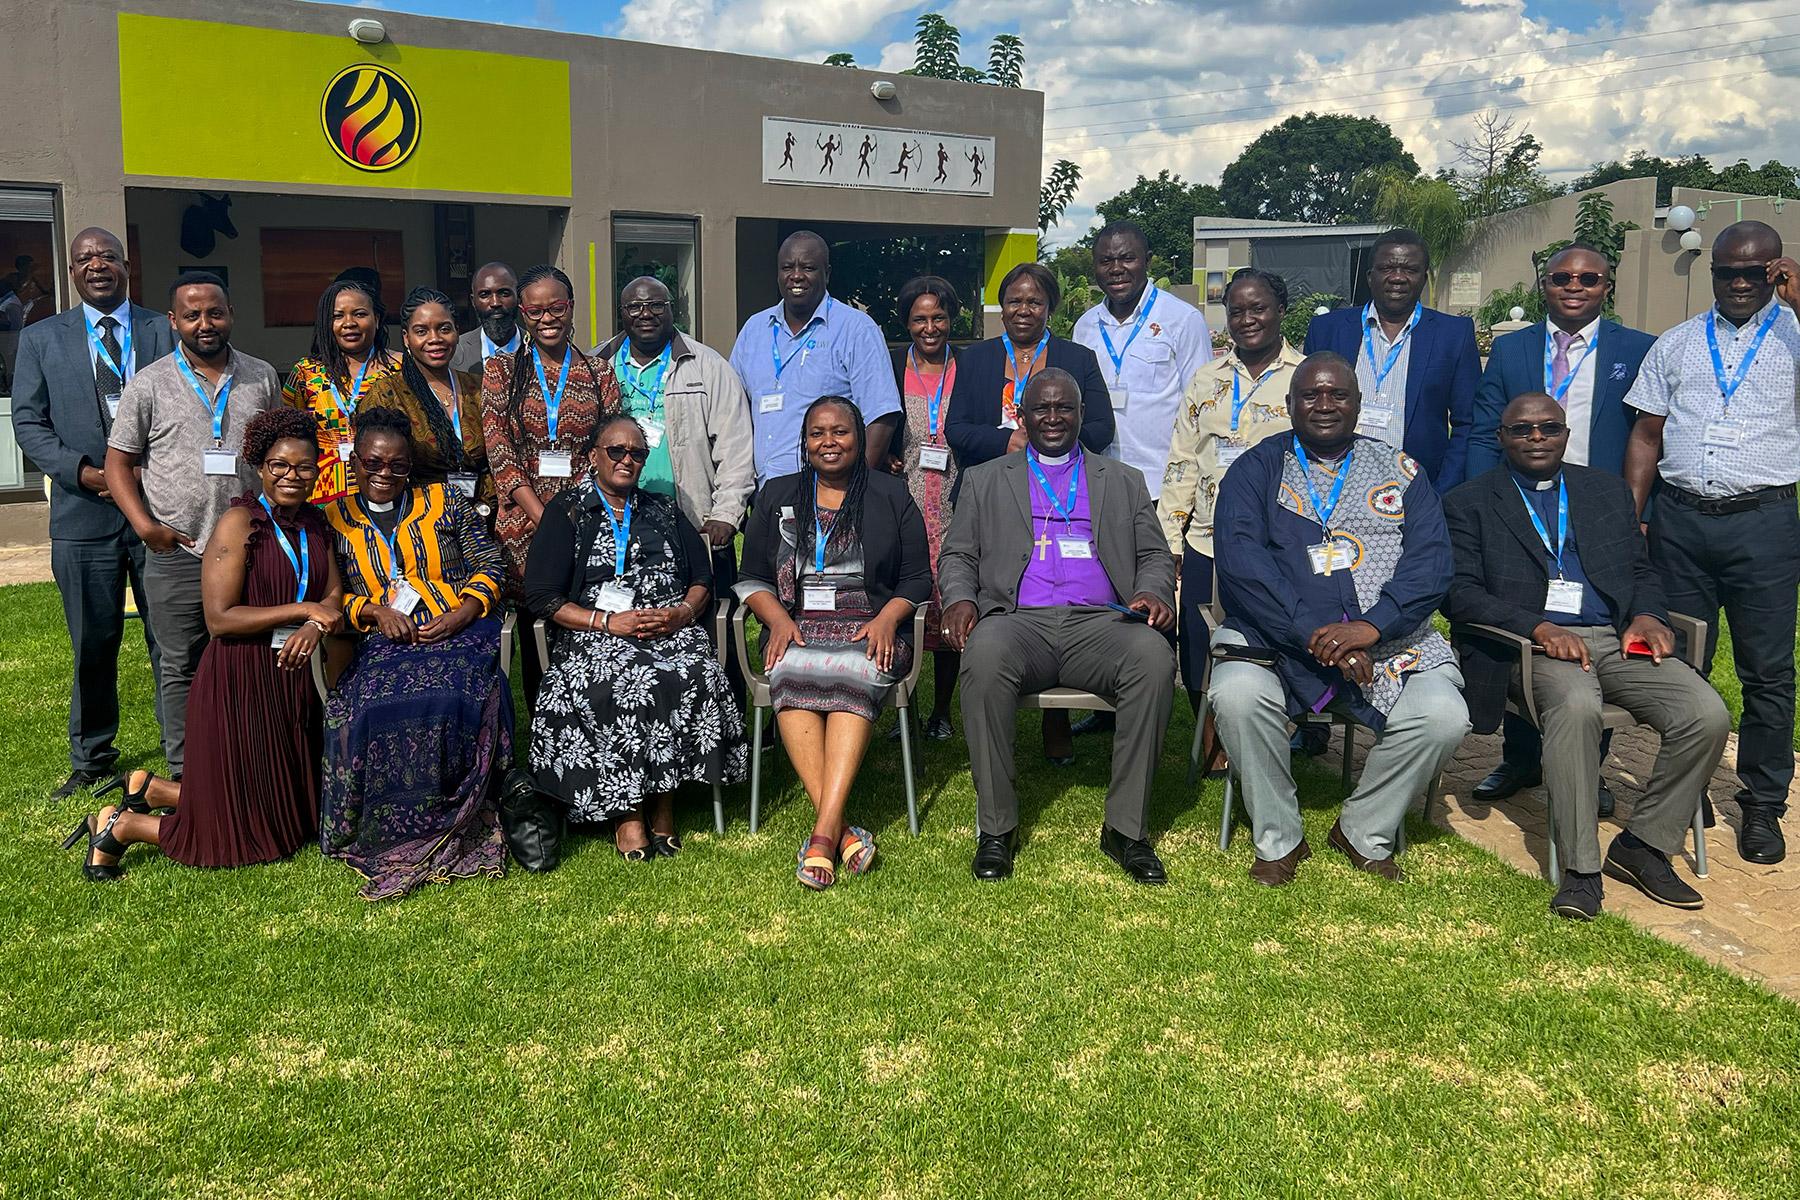 Teilnehmende am Workshop zur Umsetzung der UPR und zum Peer Learning in Bulawayo, Simbabwe